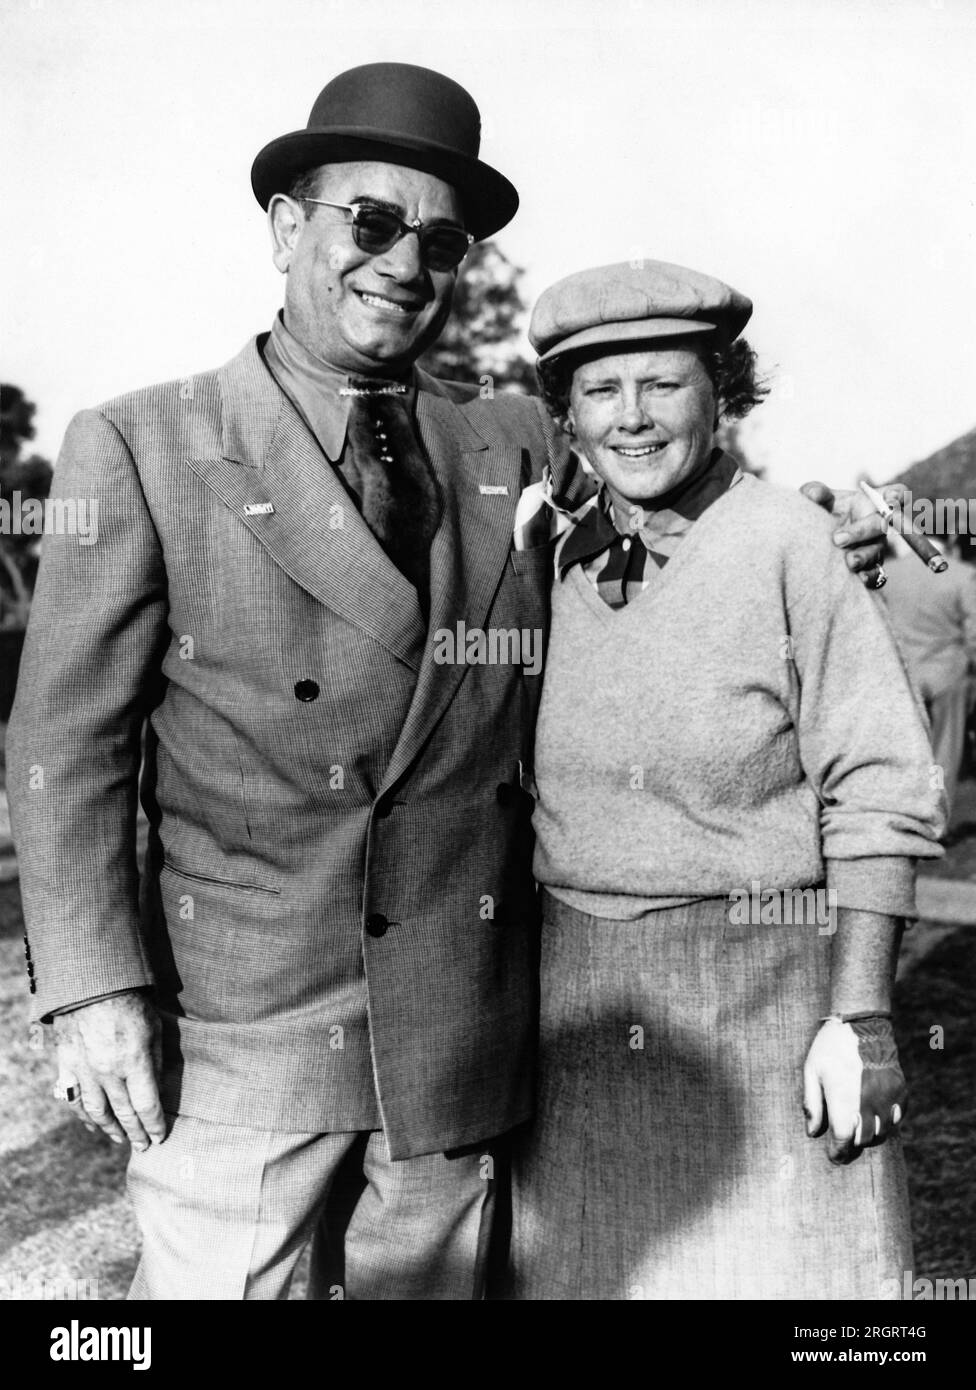 Nouvelle-Orléans, Louisiane : c. 1952 la golfeuse professionnelle Patty Berg rencontre le restaurateur Diamond Jim Moran de la Nouvelle-Orléans au tournoi de golf Women's Open de la Nouvelle-Orléans. Banque D'Images